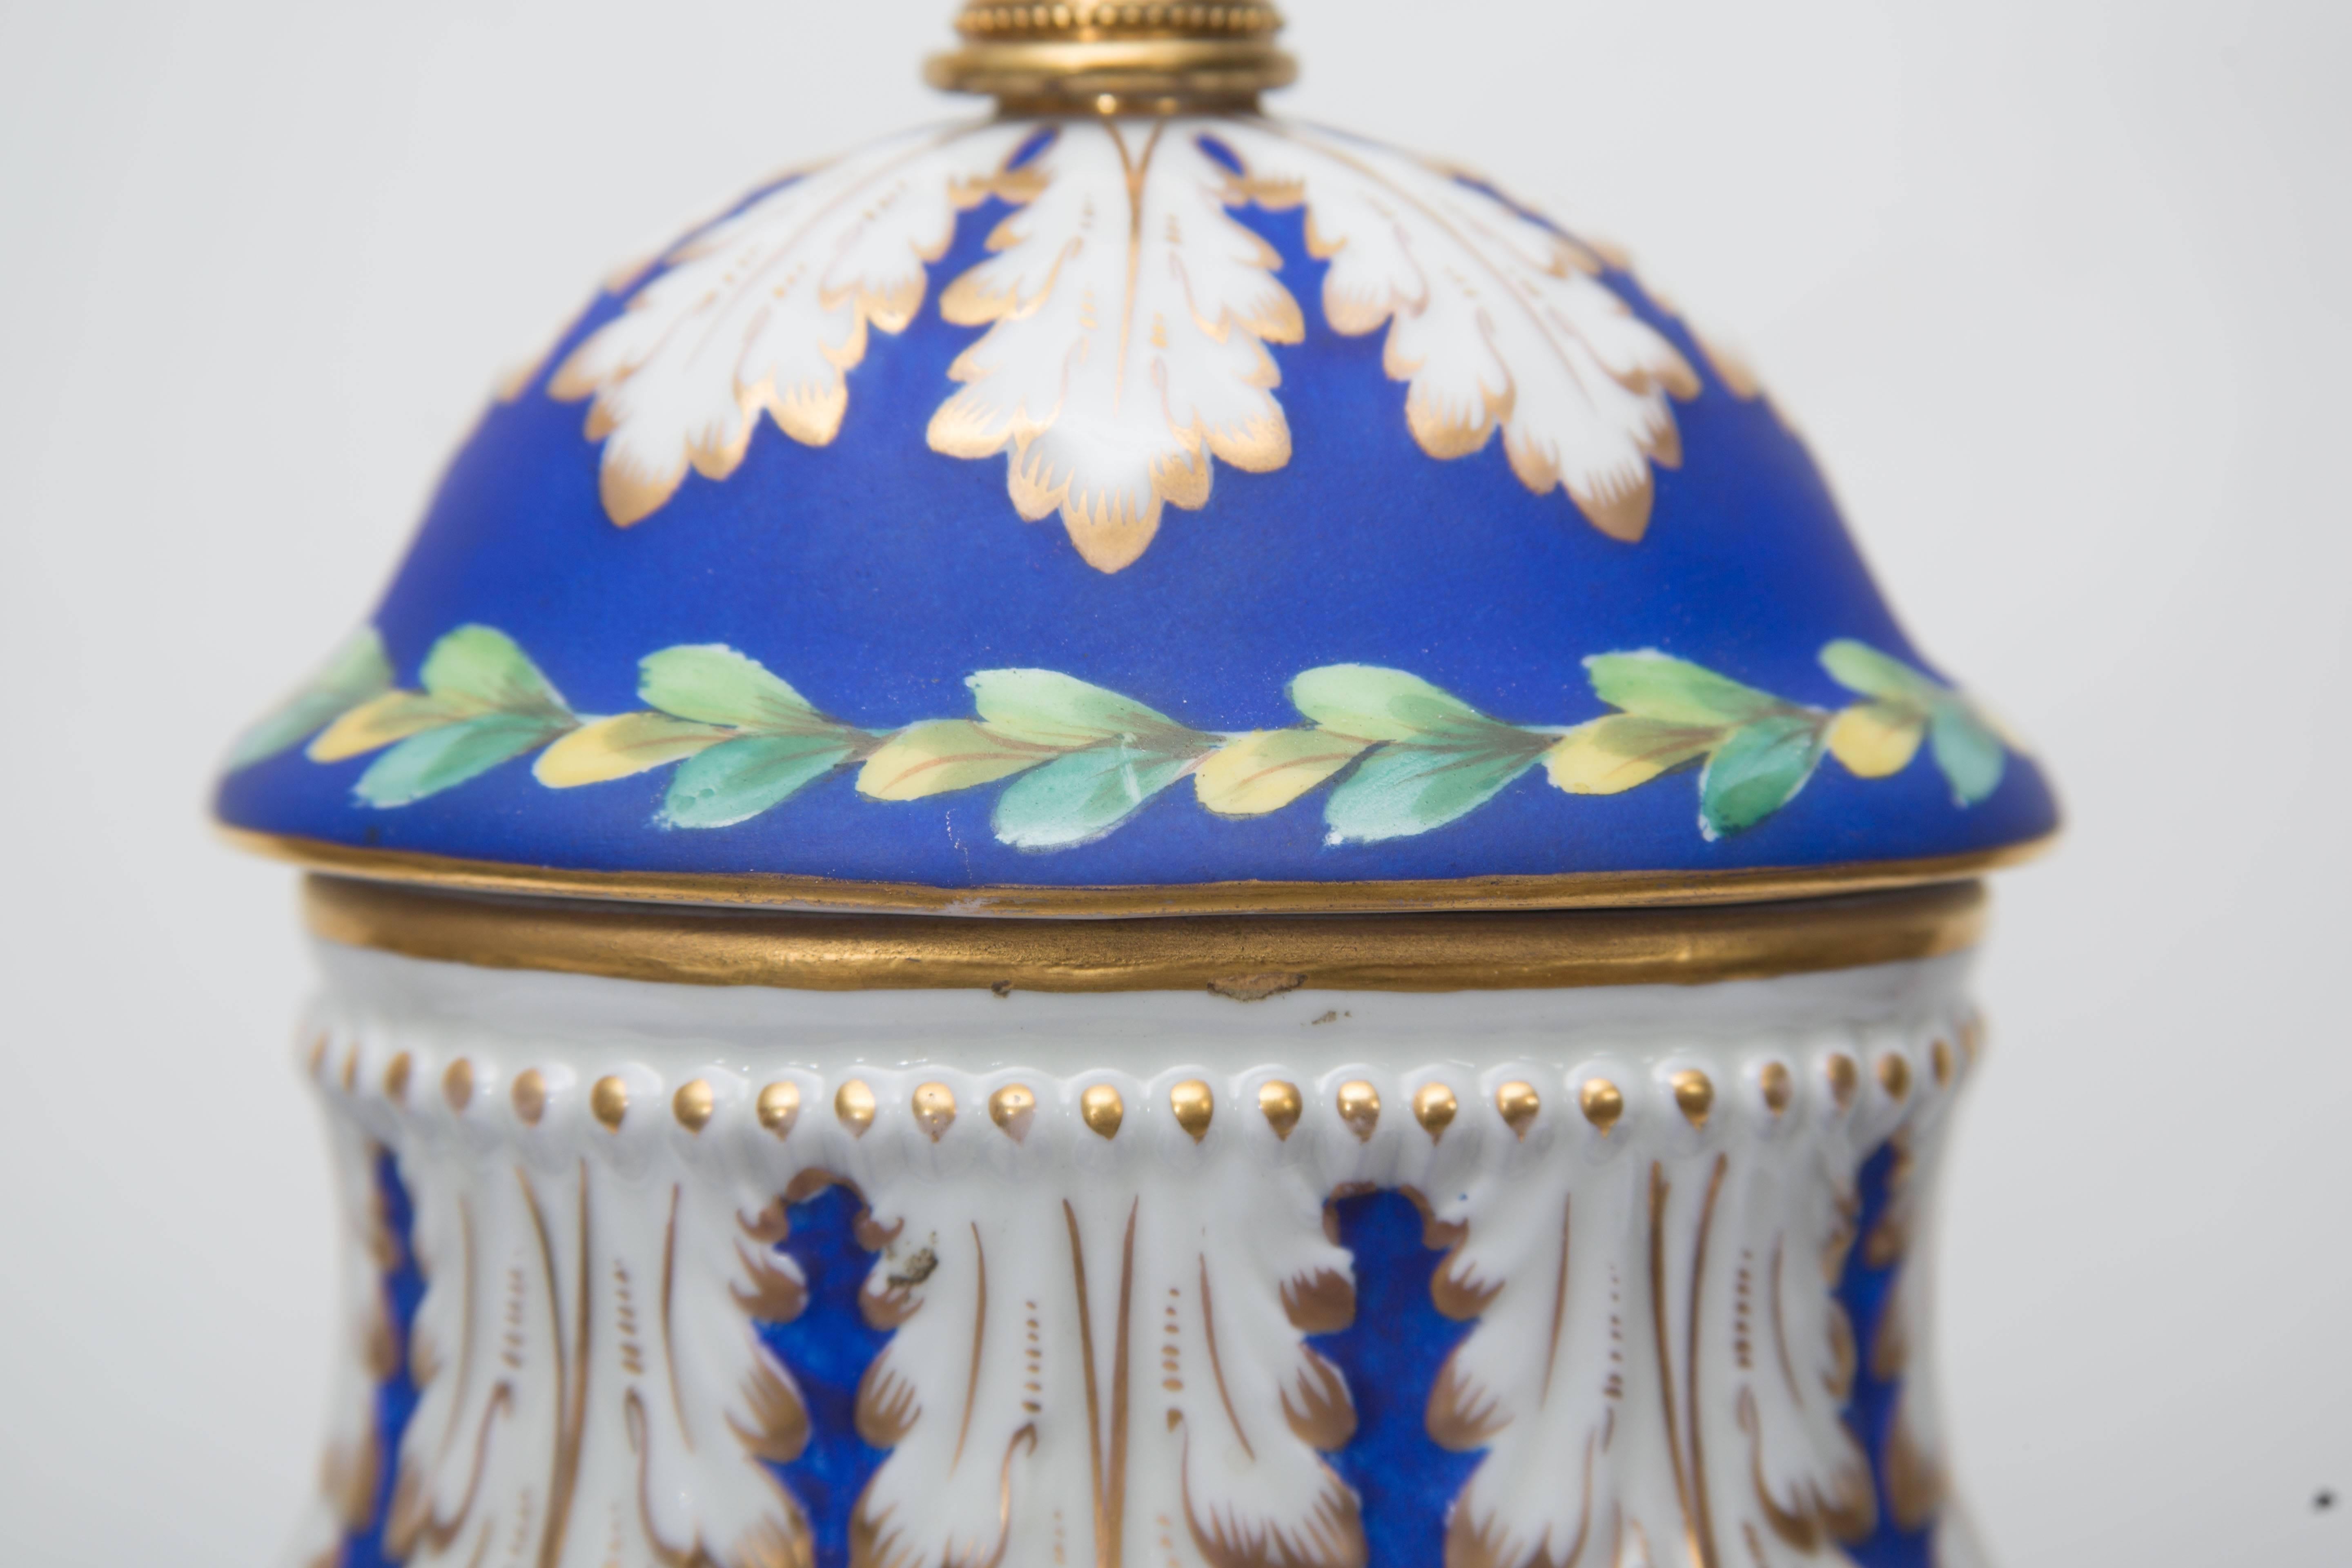 Il s'agit d'une élégante urne française en porcelaine émaillée et en biscuit convertie en lampe. Le vase de forme ovale avec des bustes de sphinx a une section en biscuit avec des fleurs peintes dans un panier décoré sur un fond bleu juxtaposé à des